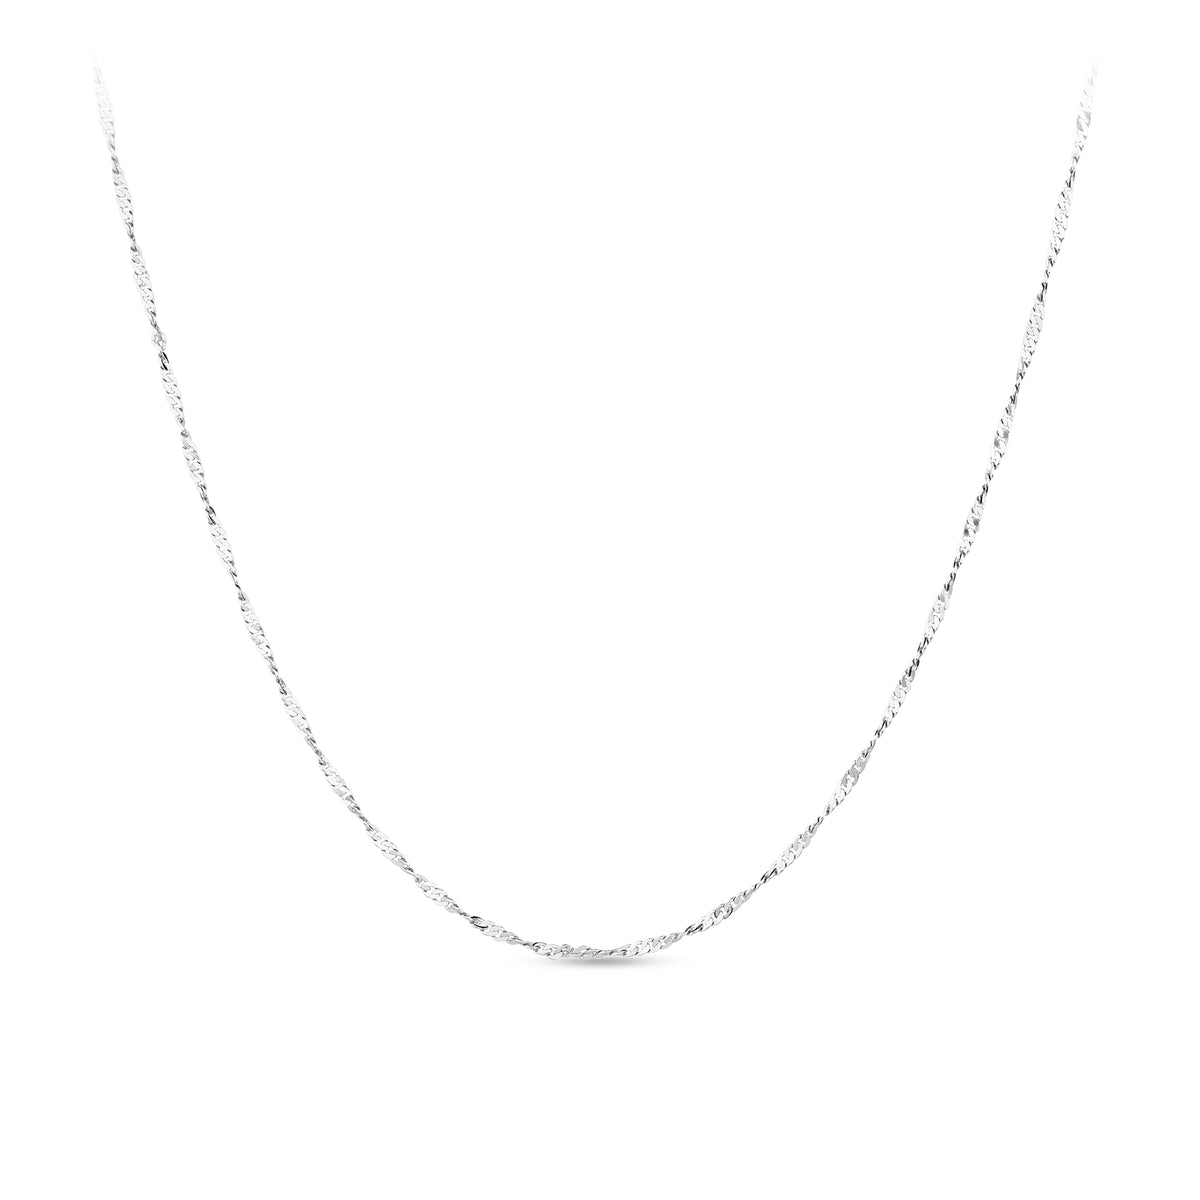 45cm Twist Chain in Sterling Silver